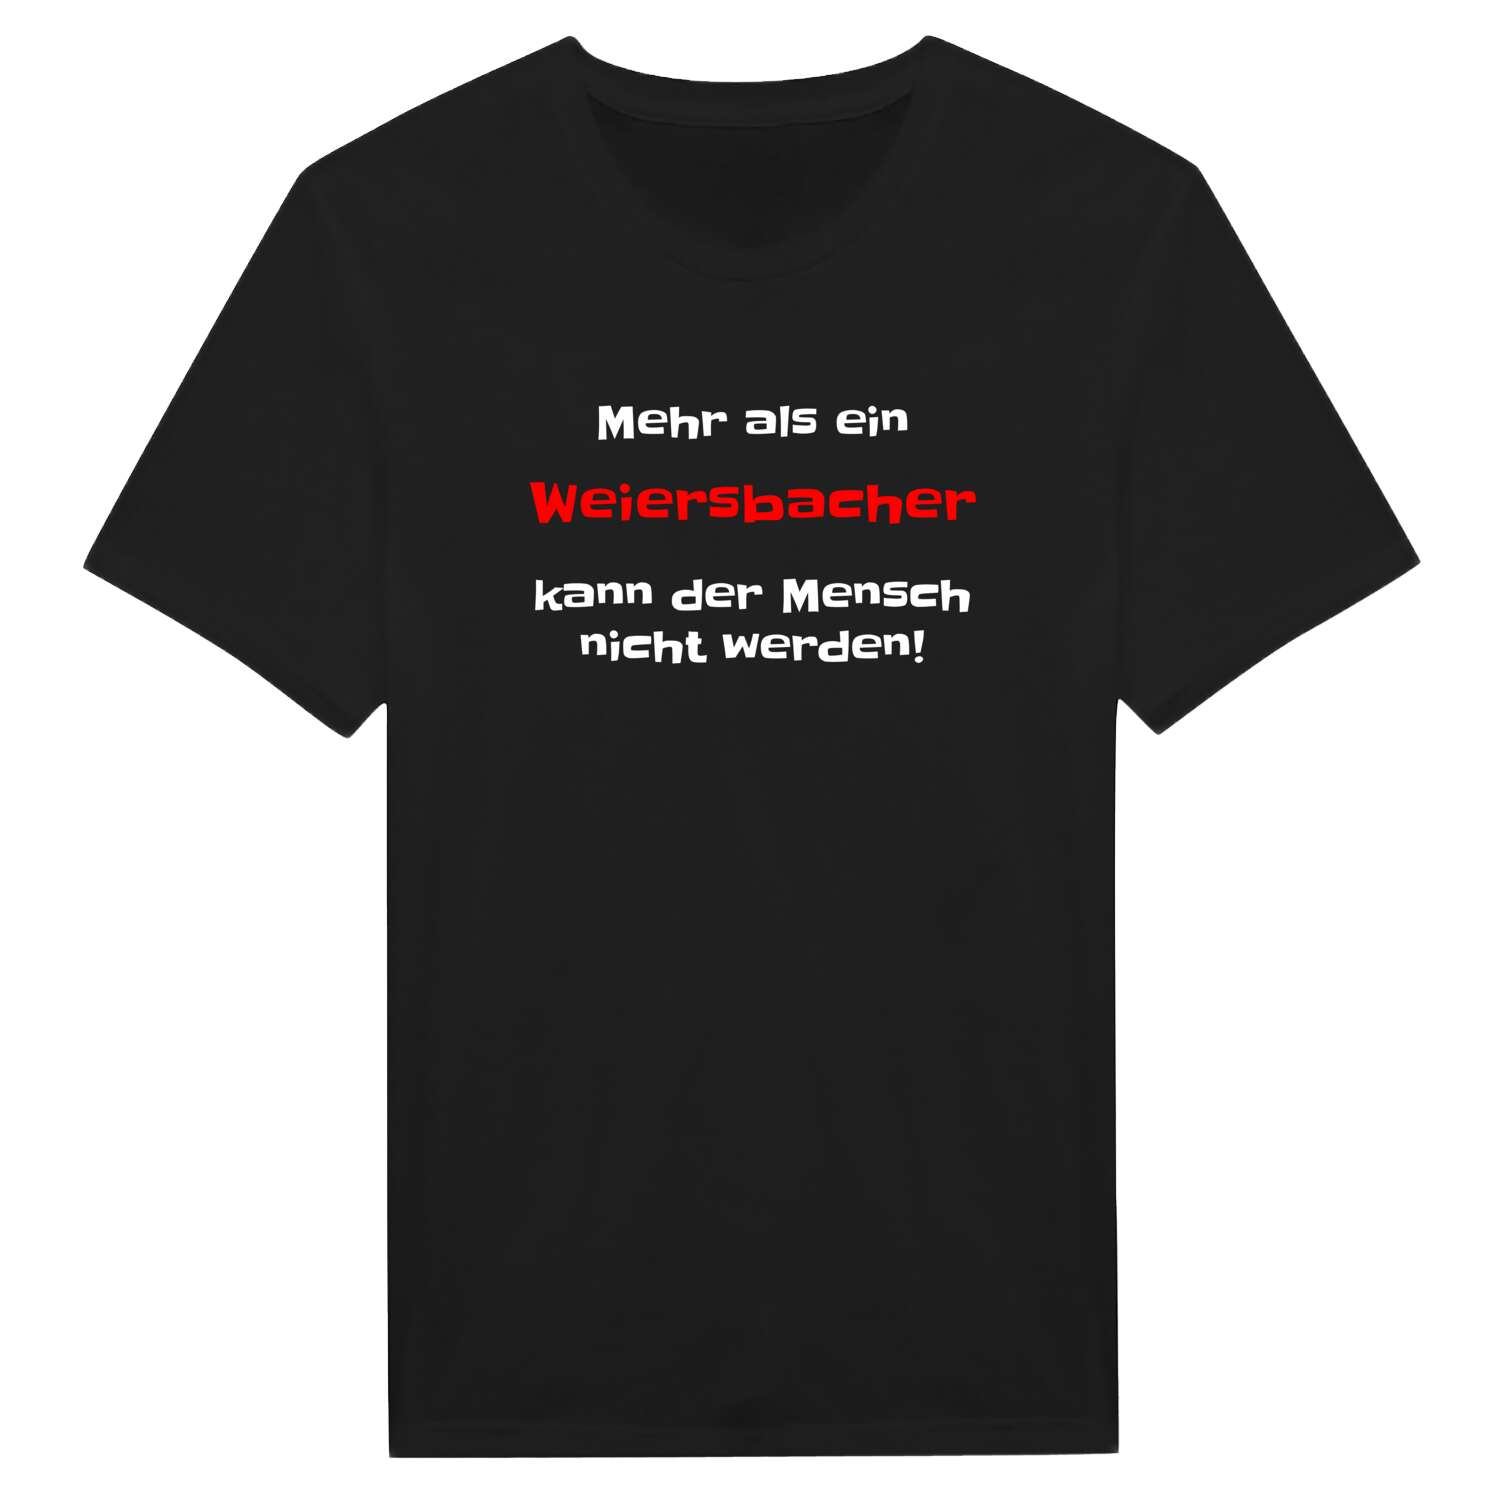 Weiersbach T-Shirt »Mehr als ein«